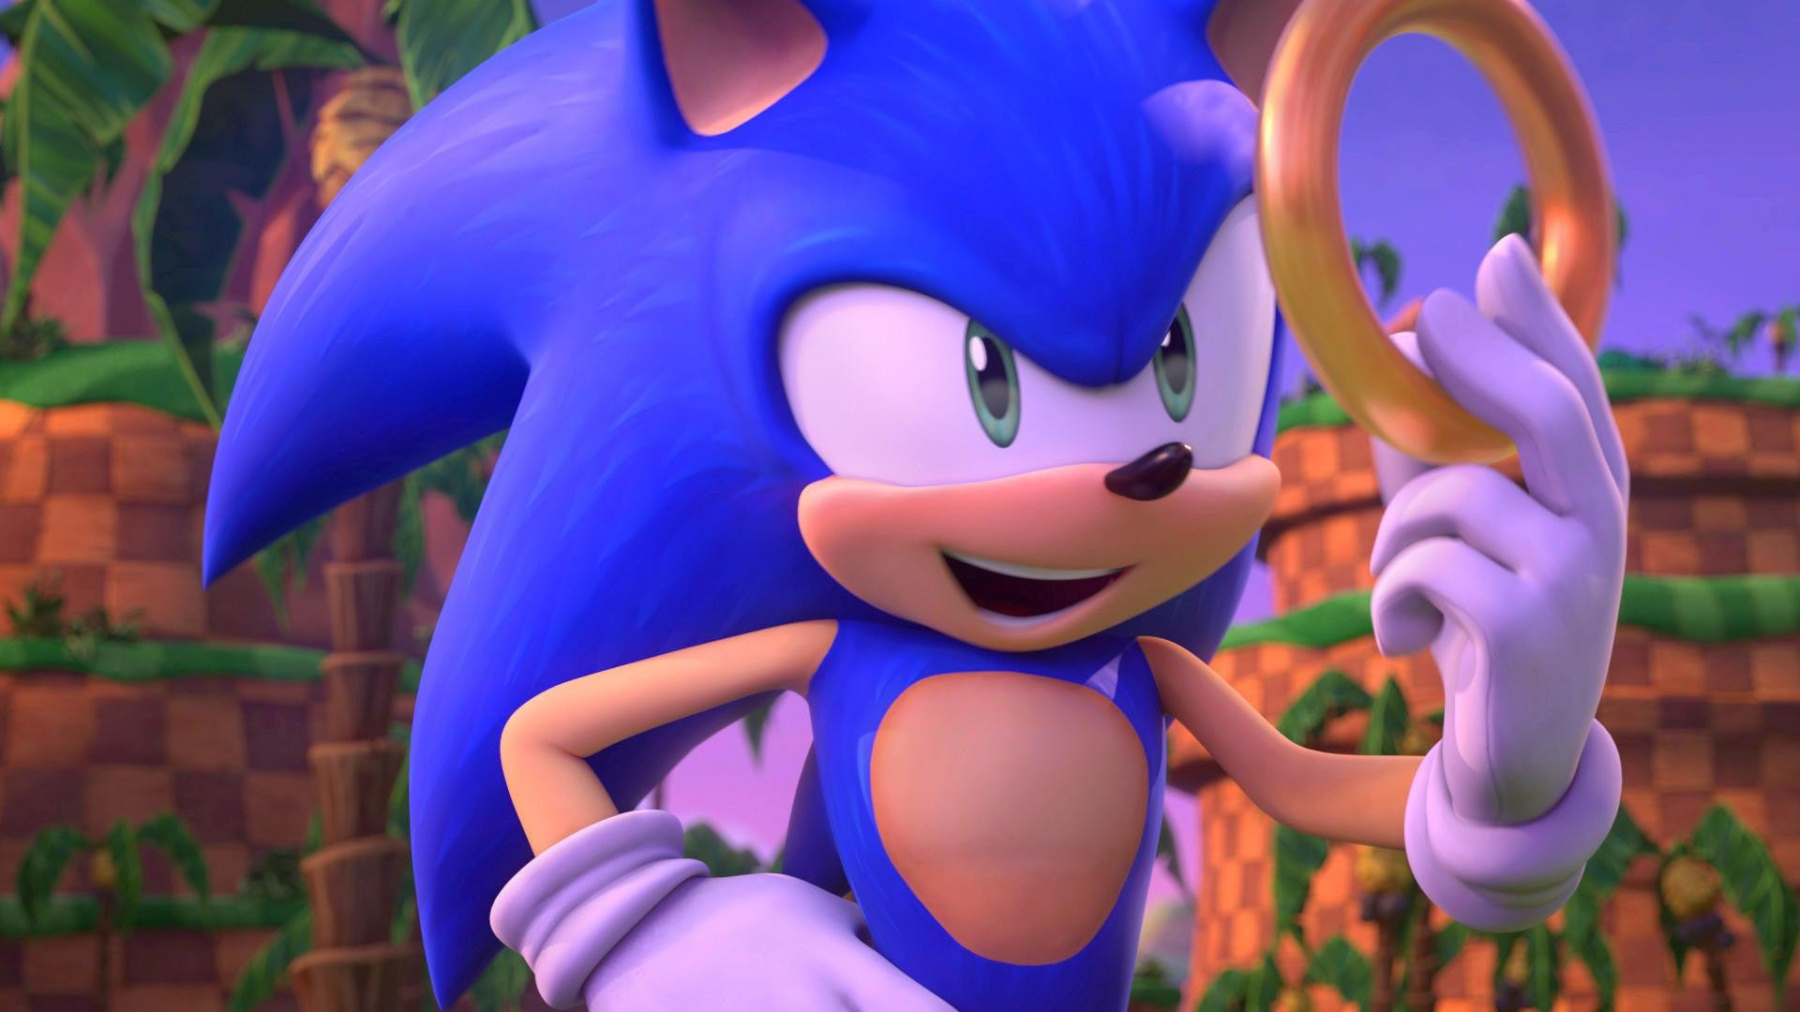 Sonic 4 movie data 2026 in 2023